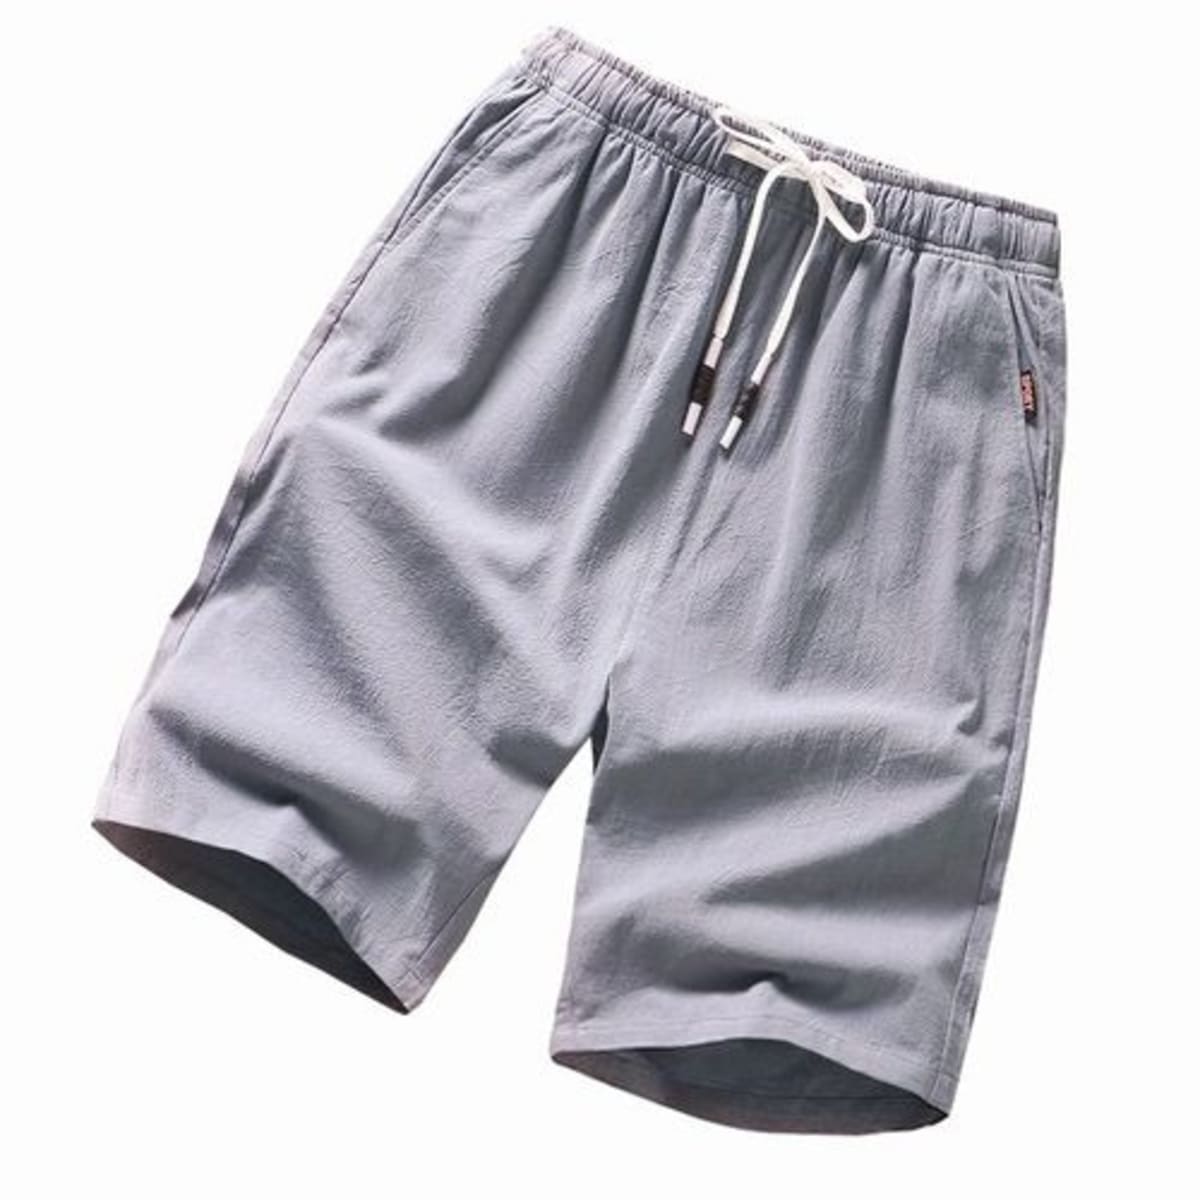 Men's Plain Grey Cotton Shorts